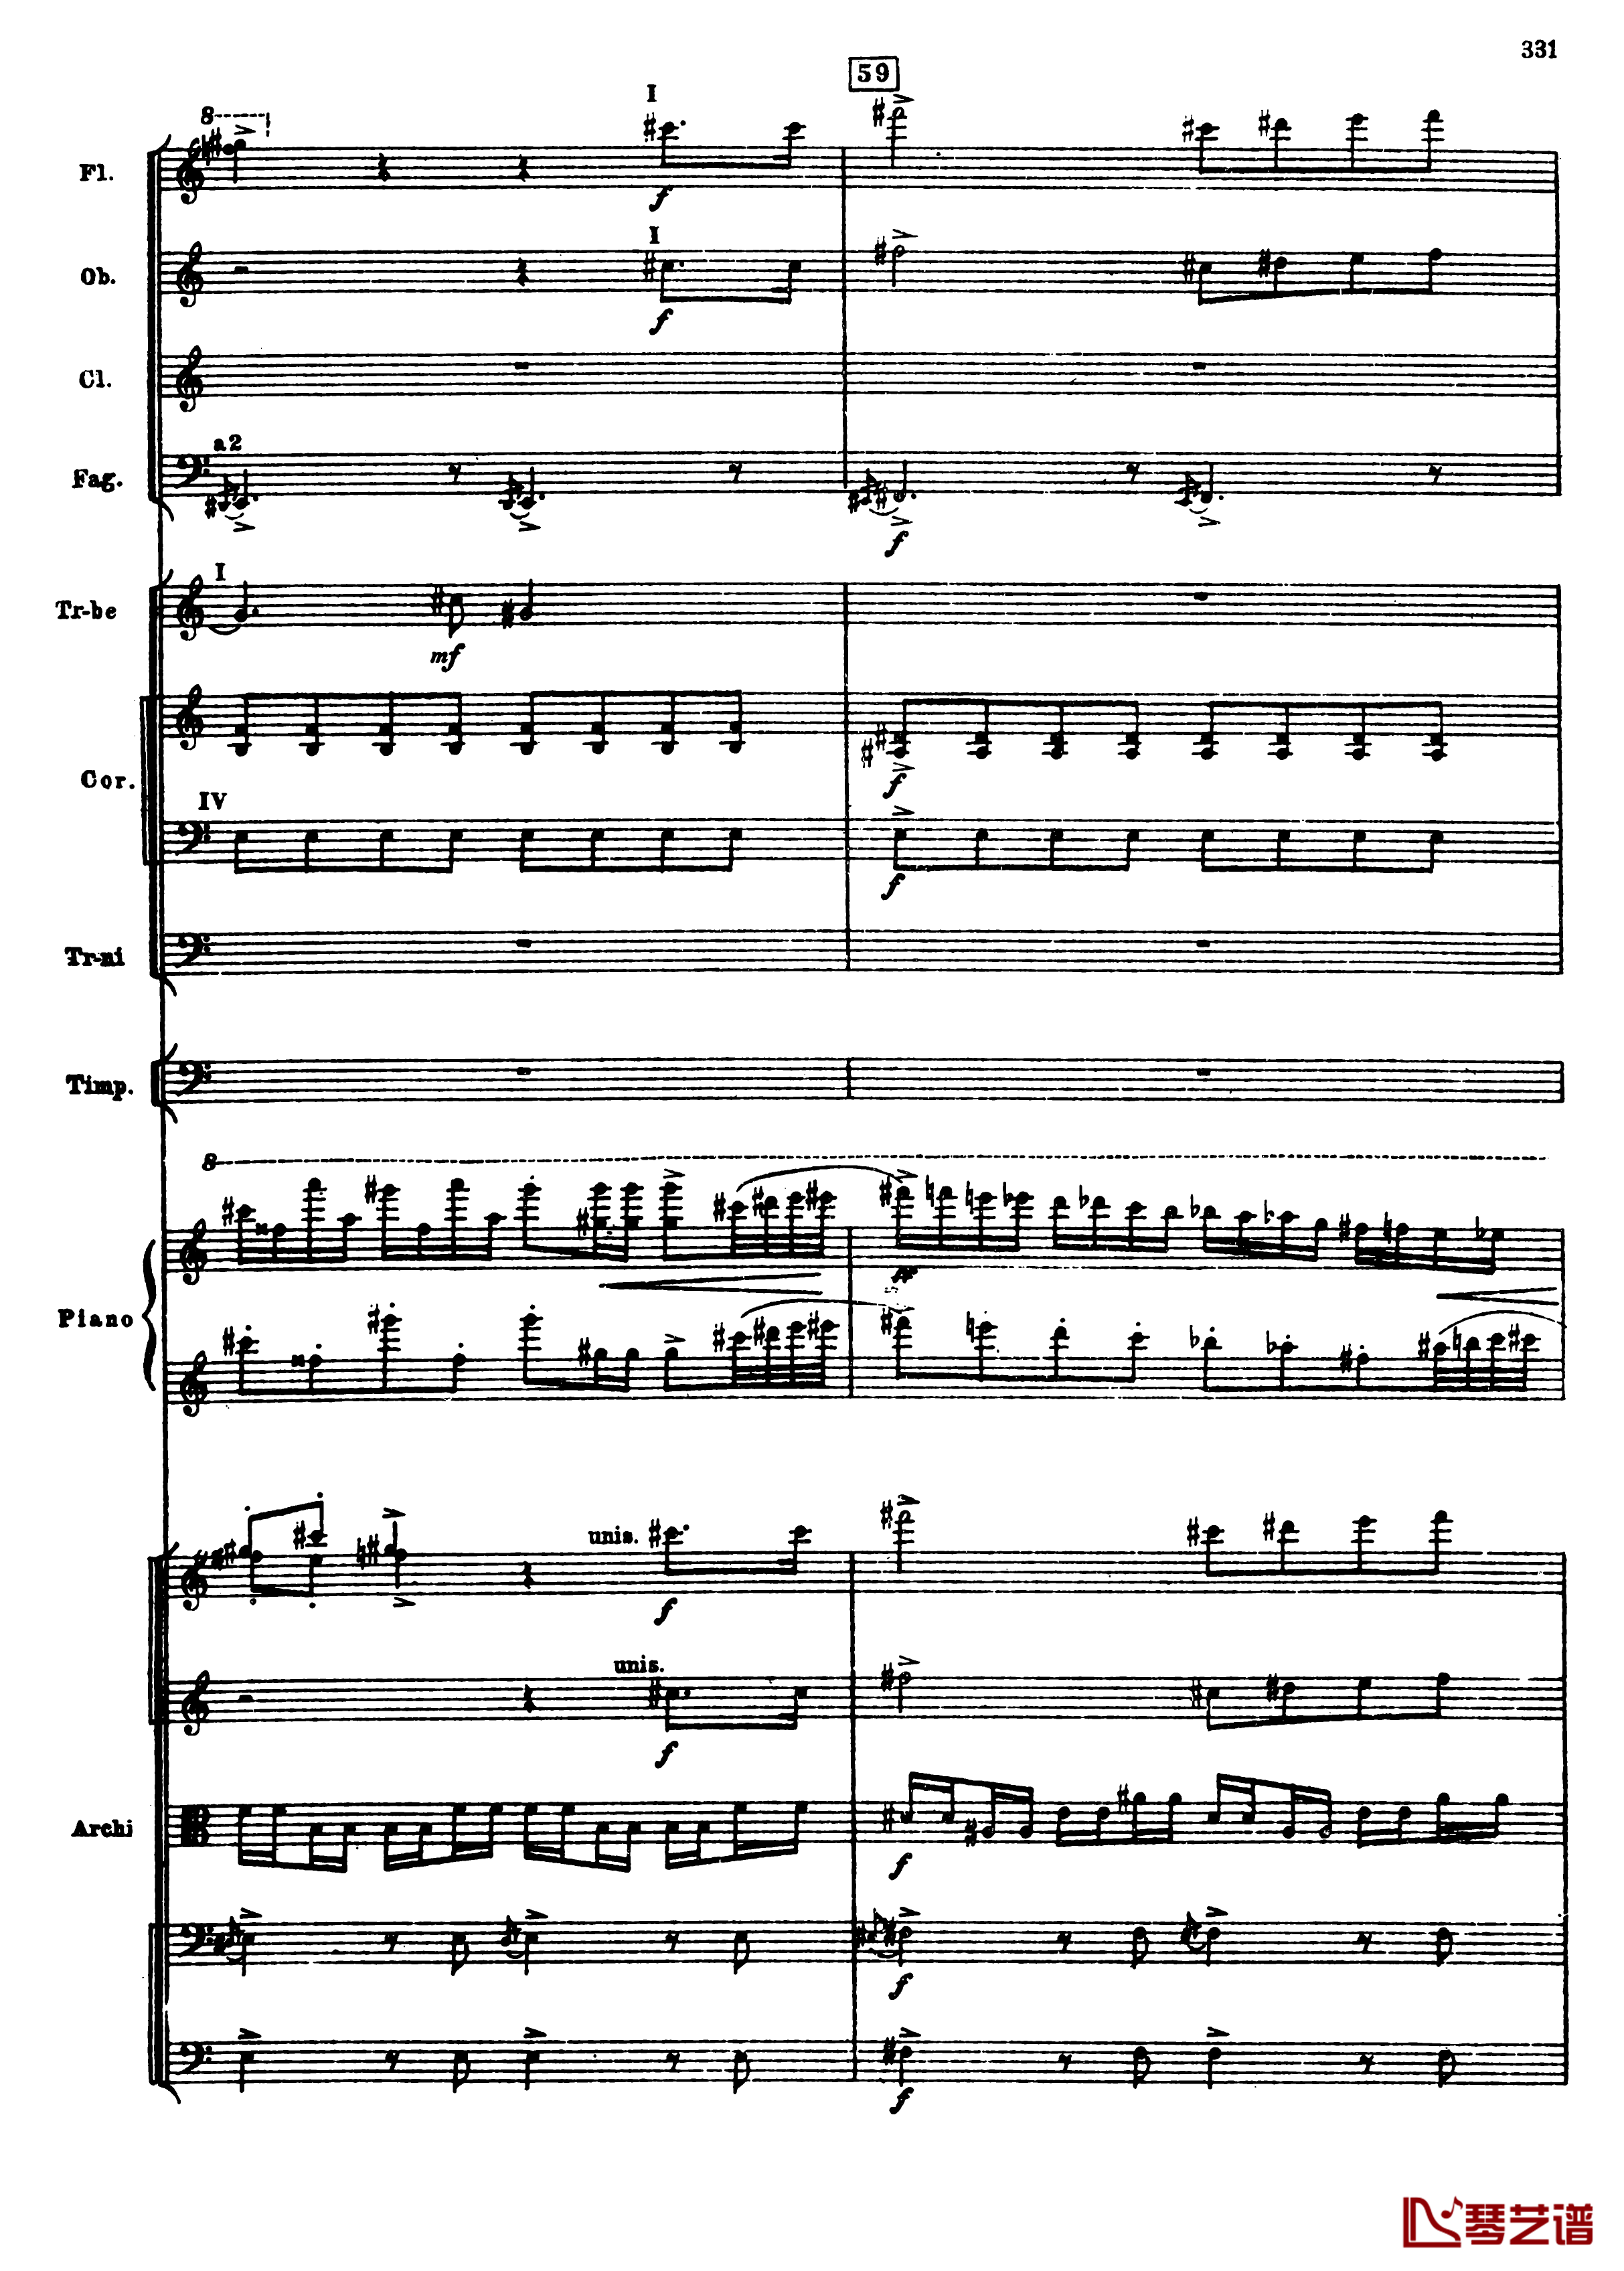 普罗科菲耶夫第三钢琴协奏曲钢琴谱-总谱-普罗科非耶夫63